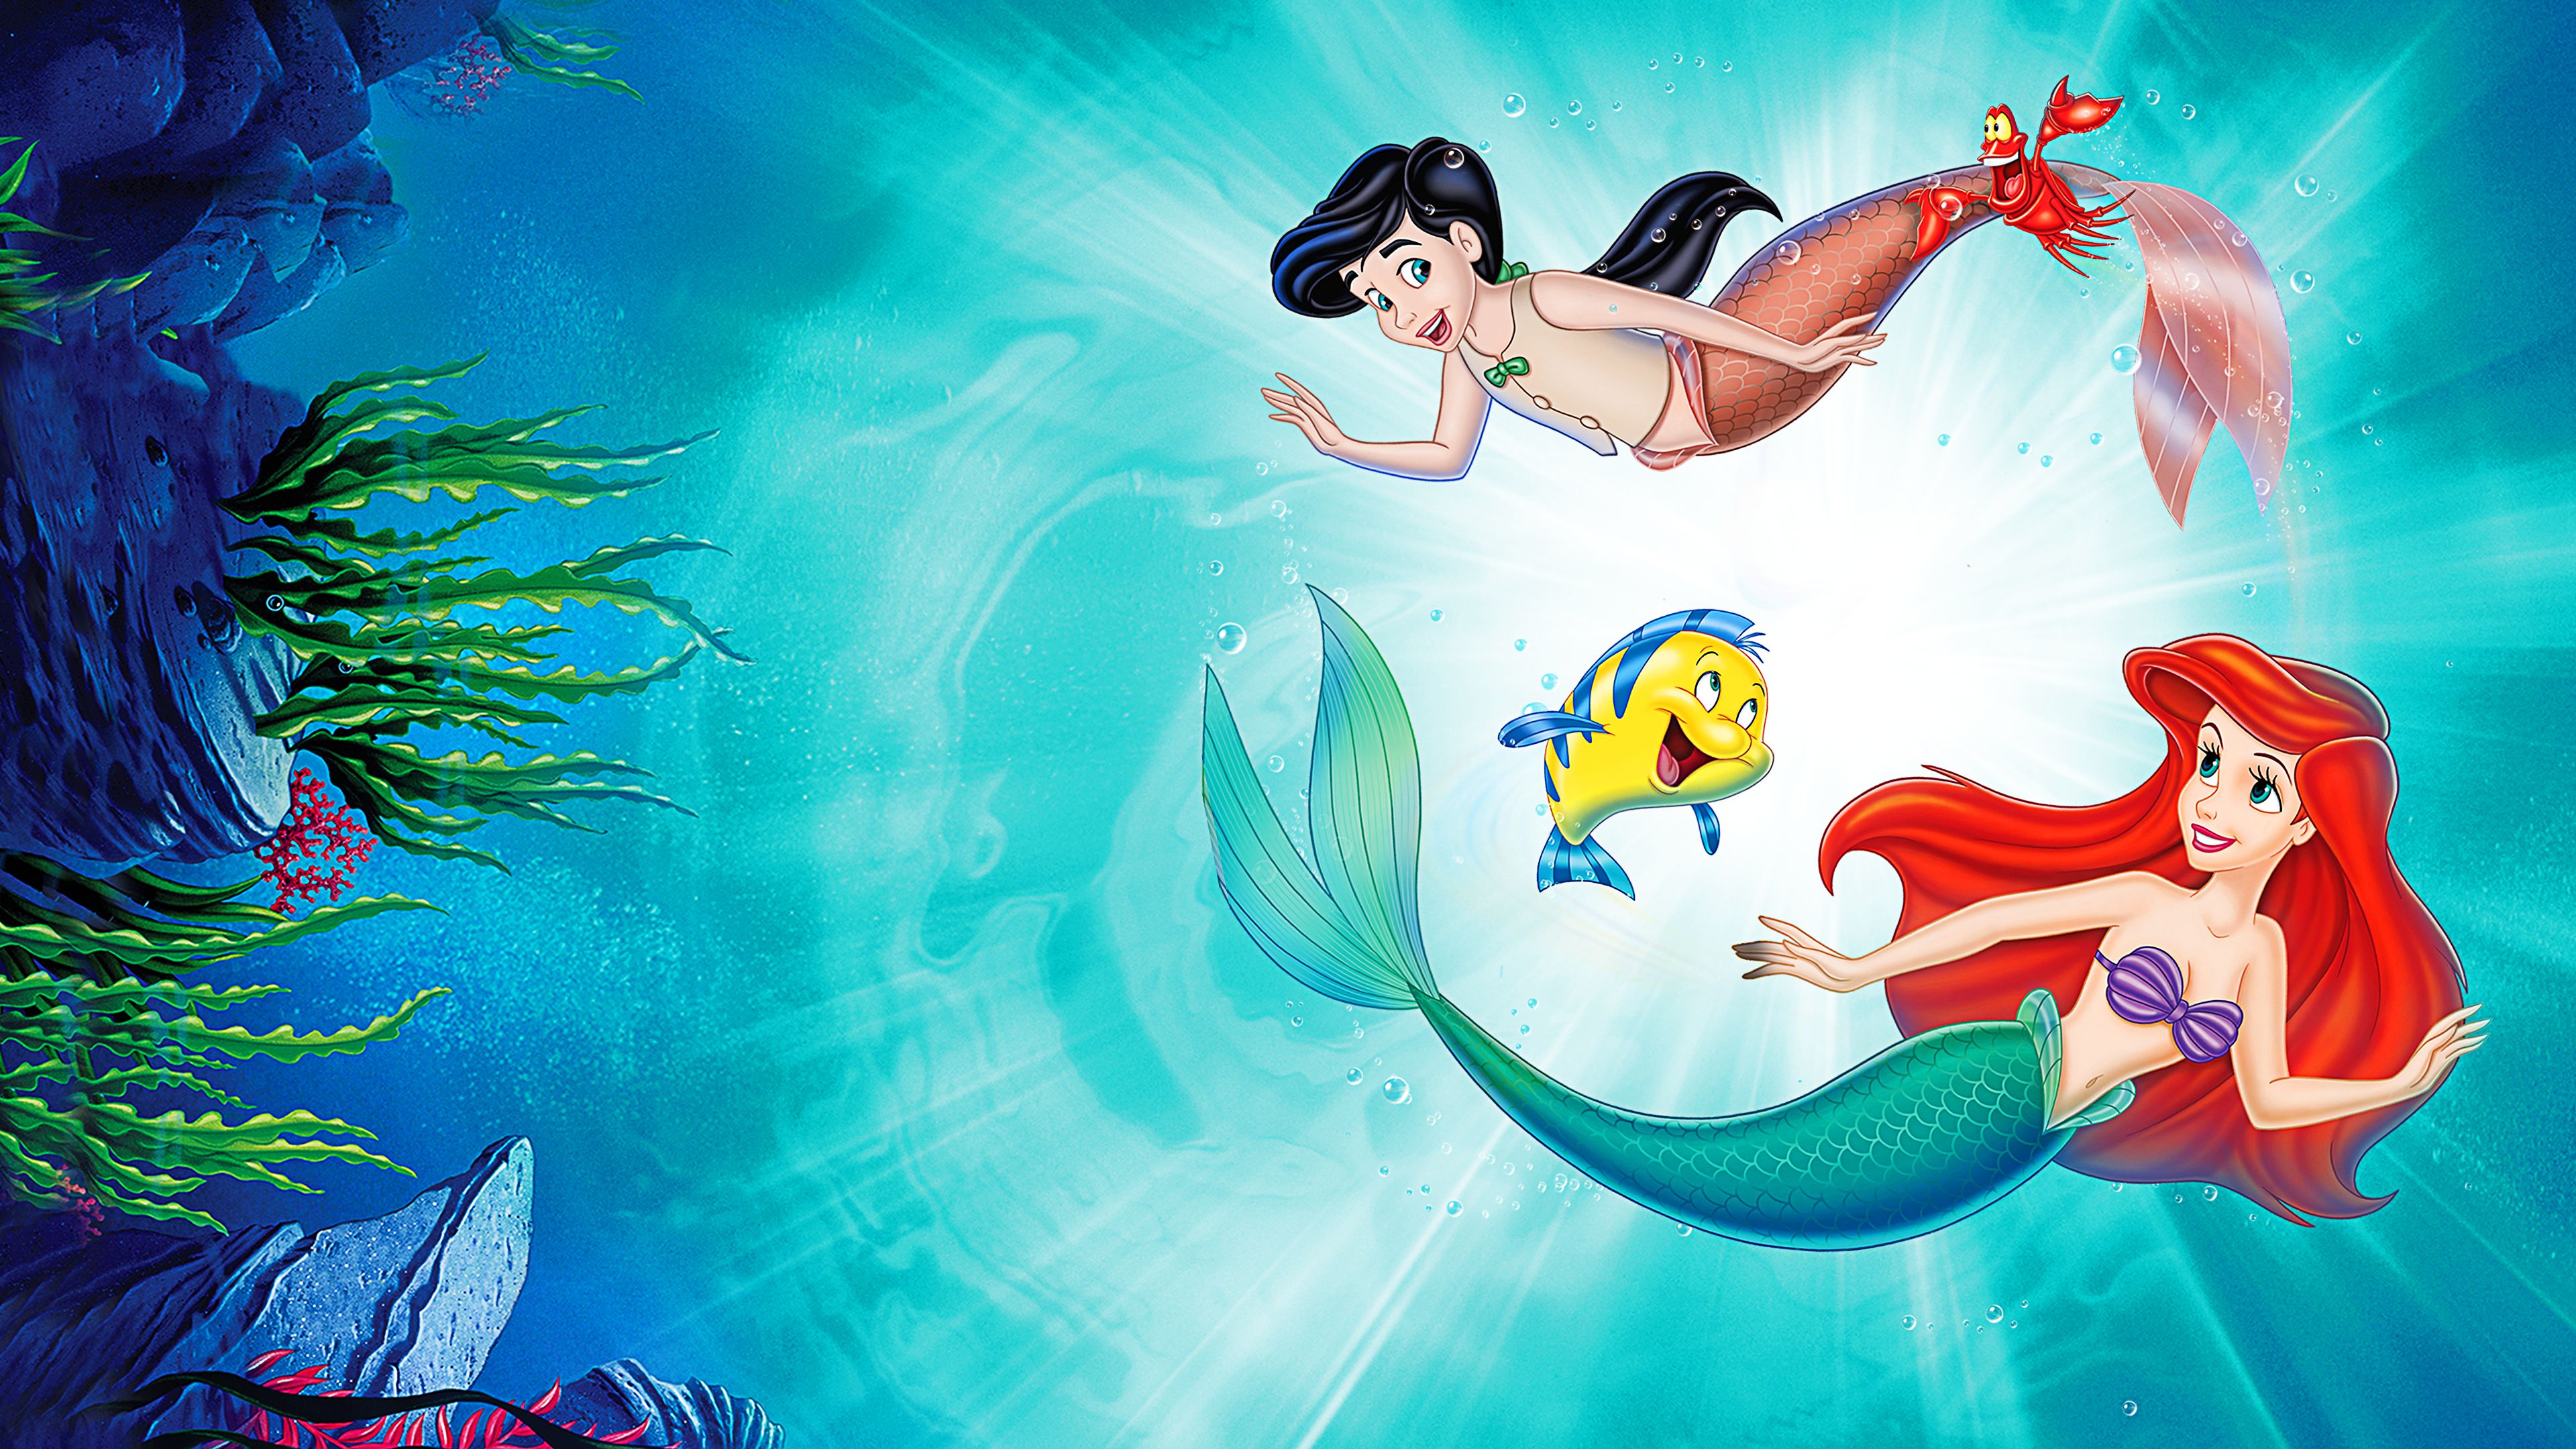 Melody Ariel The Little Mermaid 4k Ultra HD Wallpaper